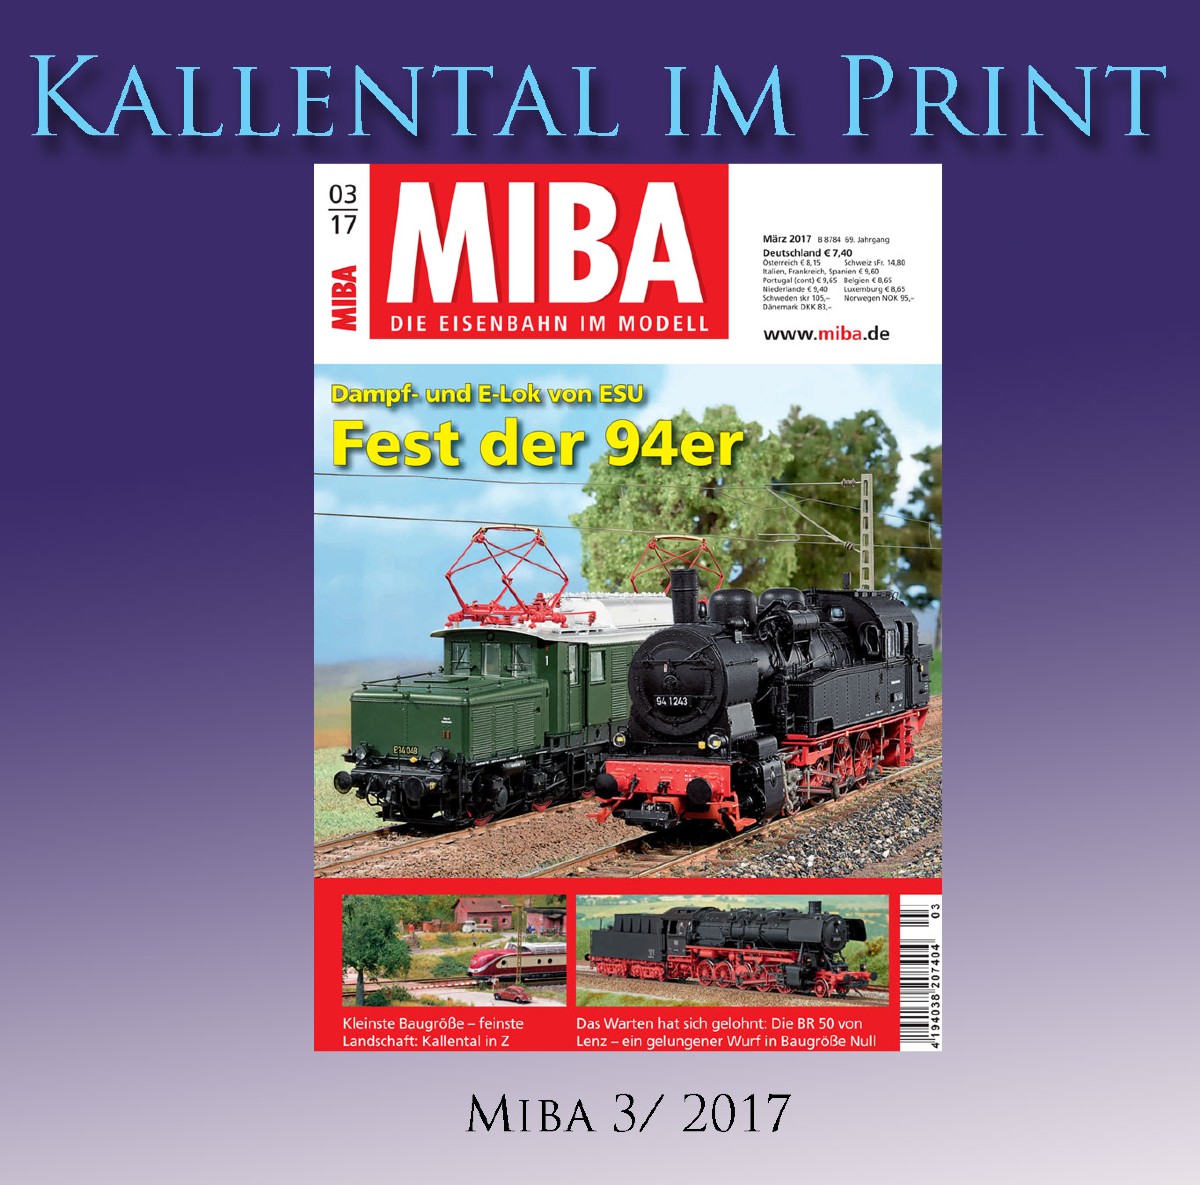 Miba Eisenbahn im Modell 3/2017 "Dampf Fest der 94er" und E-Lok von ESU 